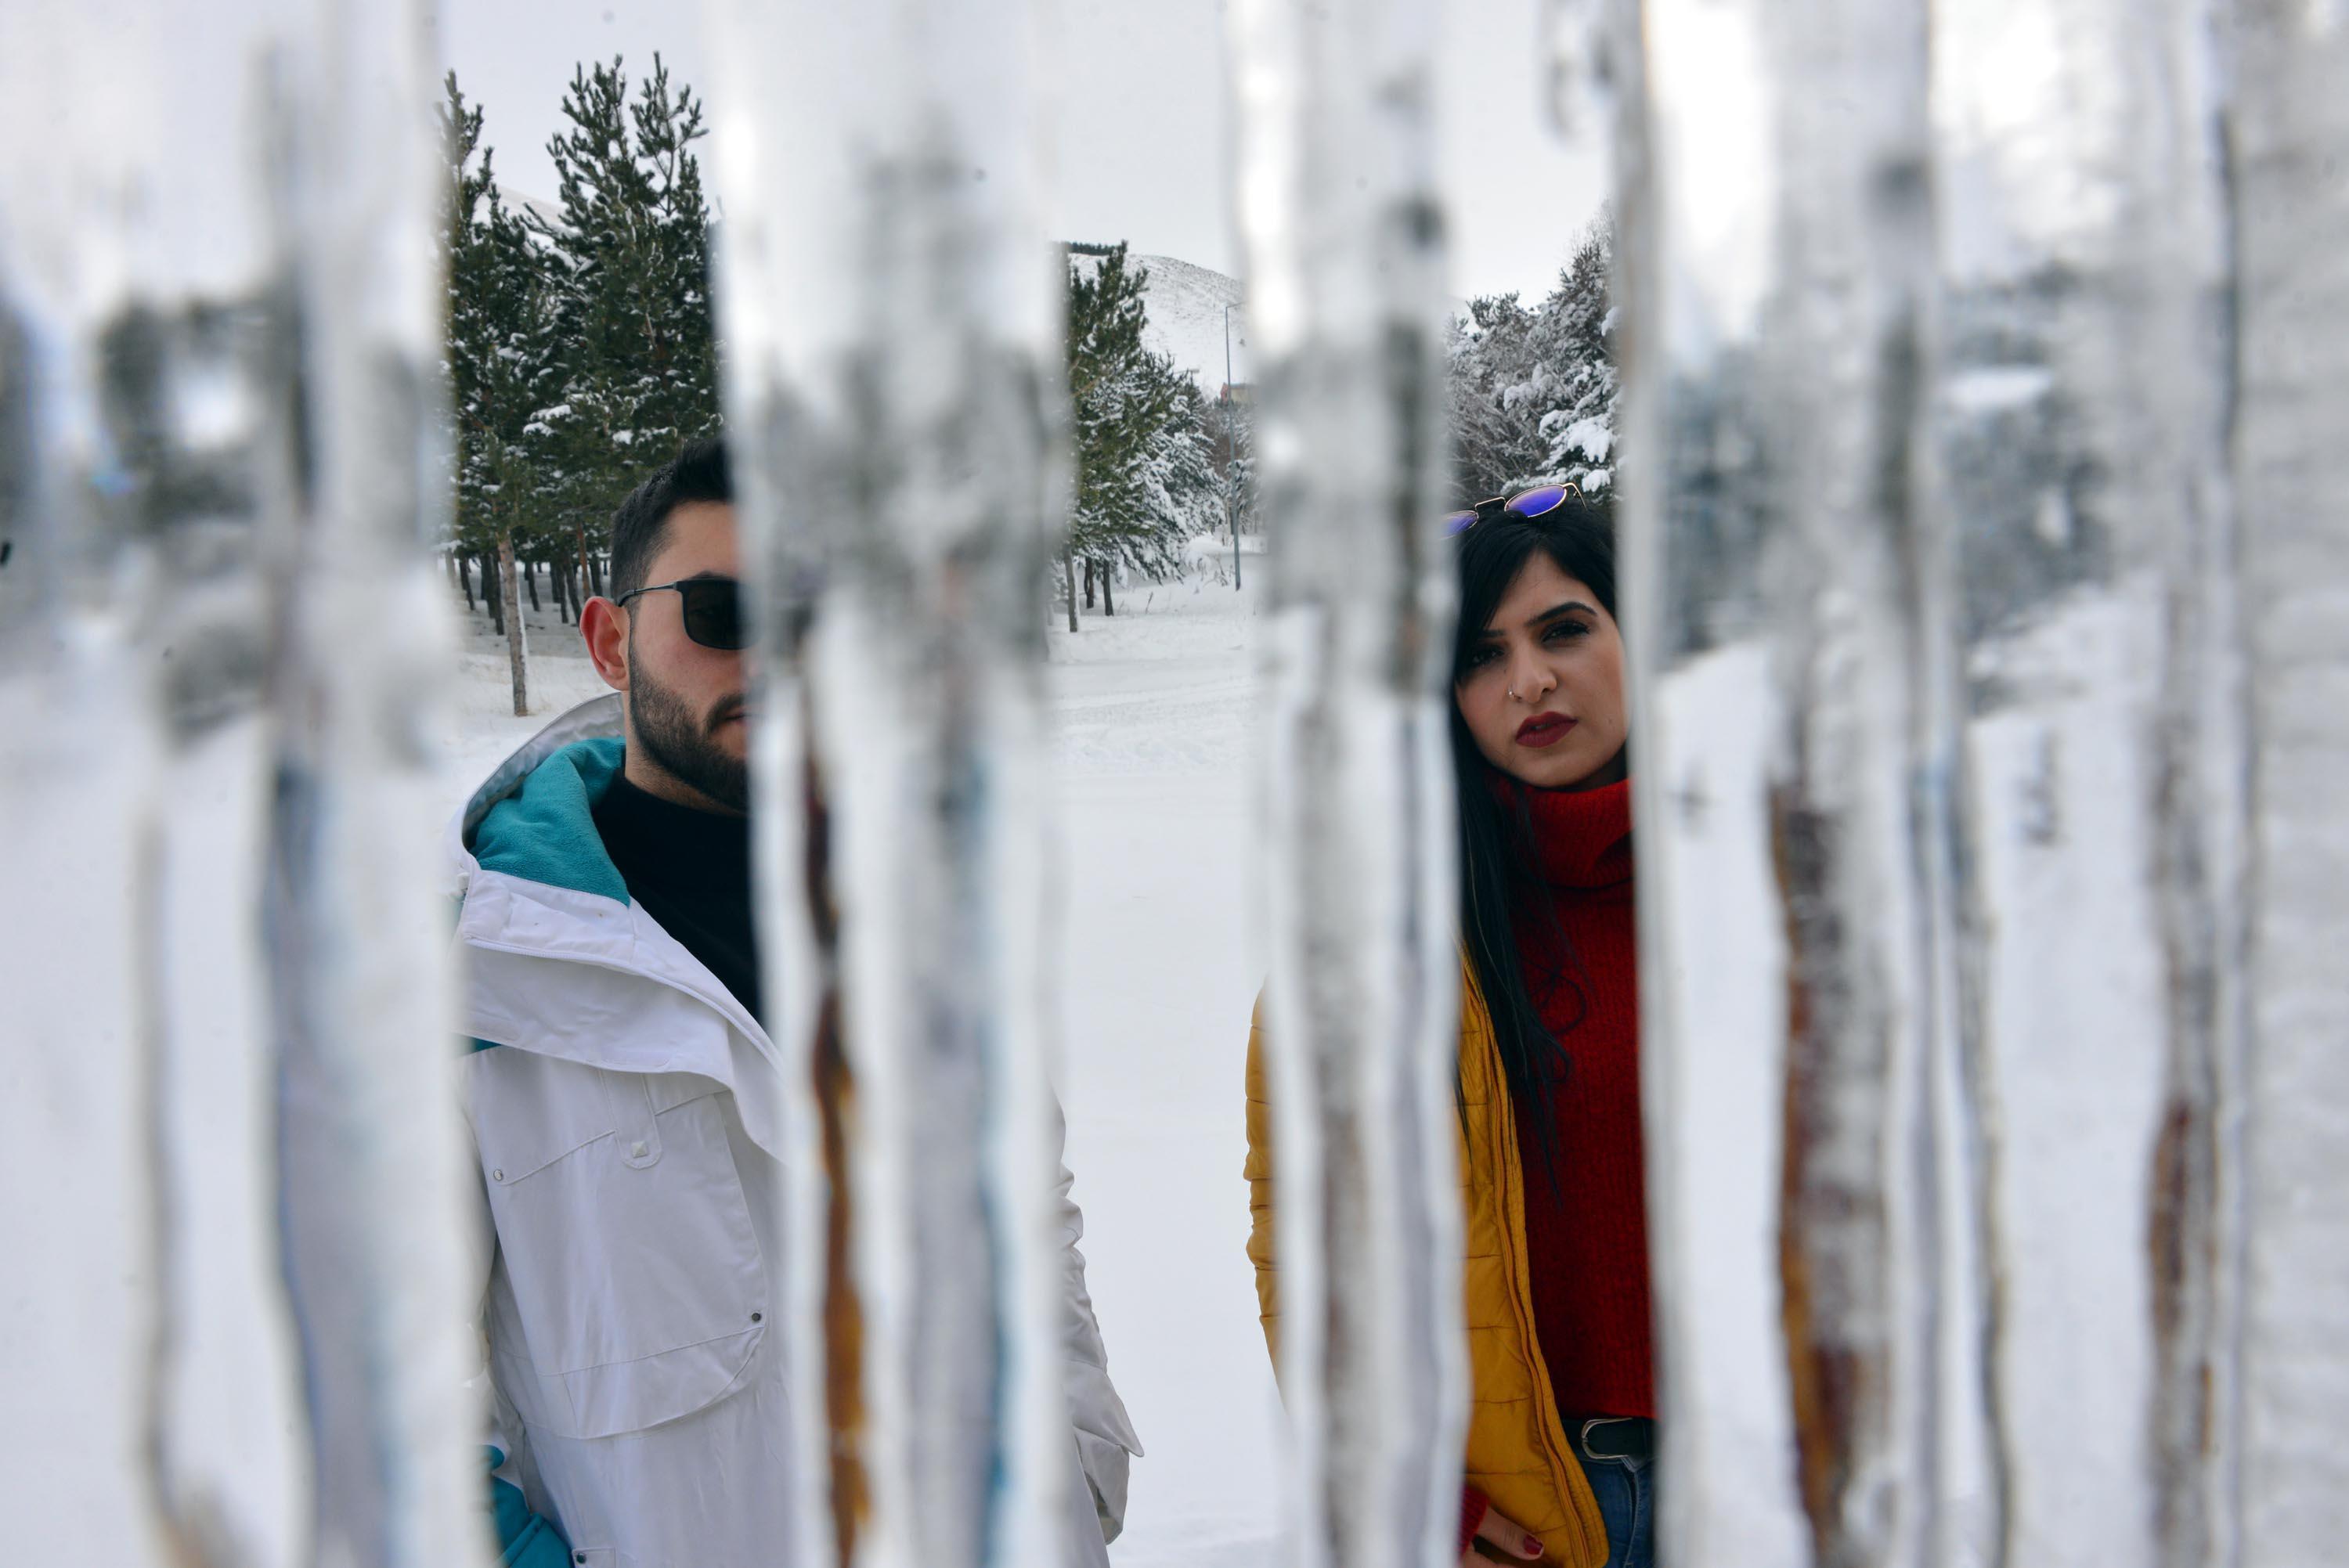 Erzurumda kış başkadır 2 metrelik buz sarkıtları görenleri şaşırtıyor